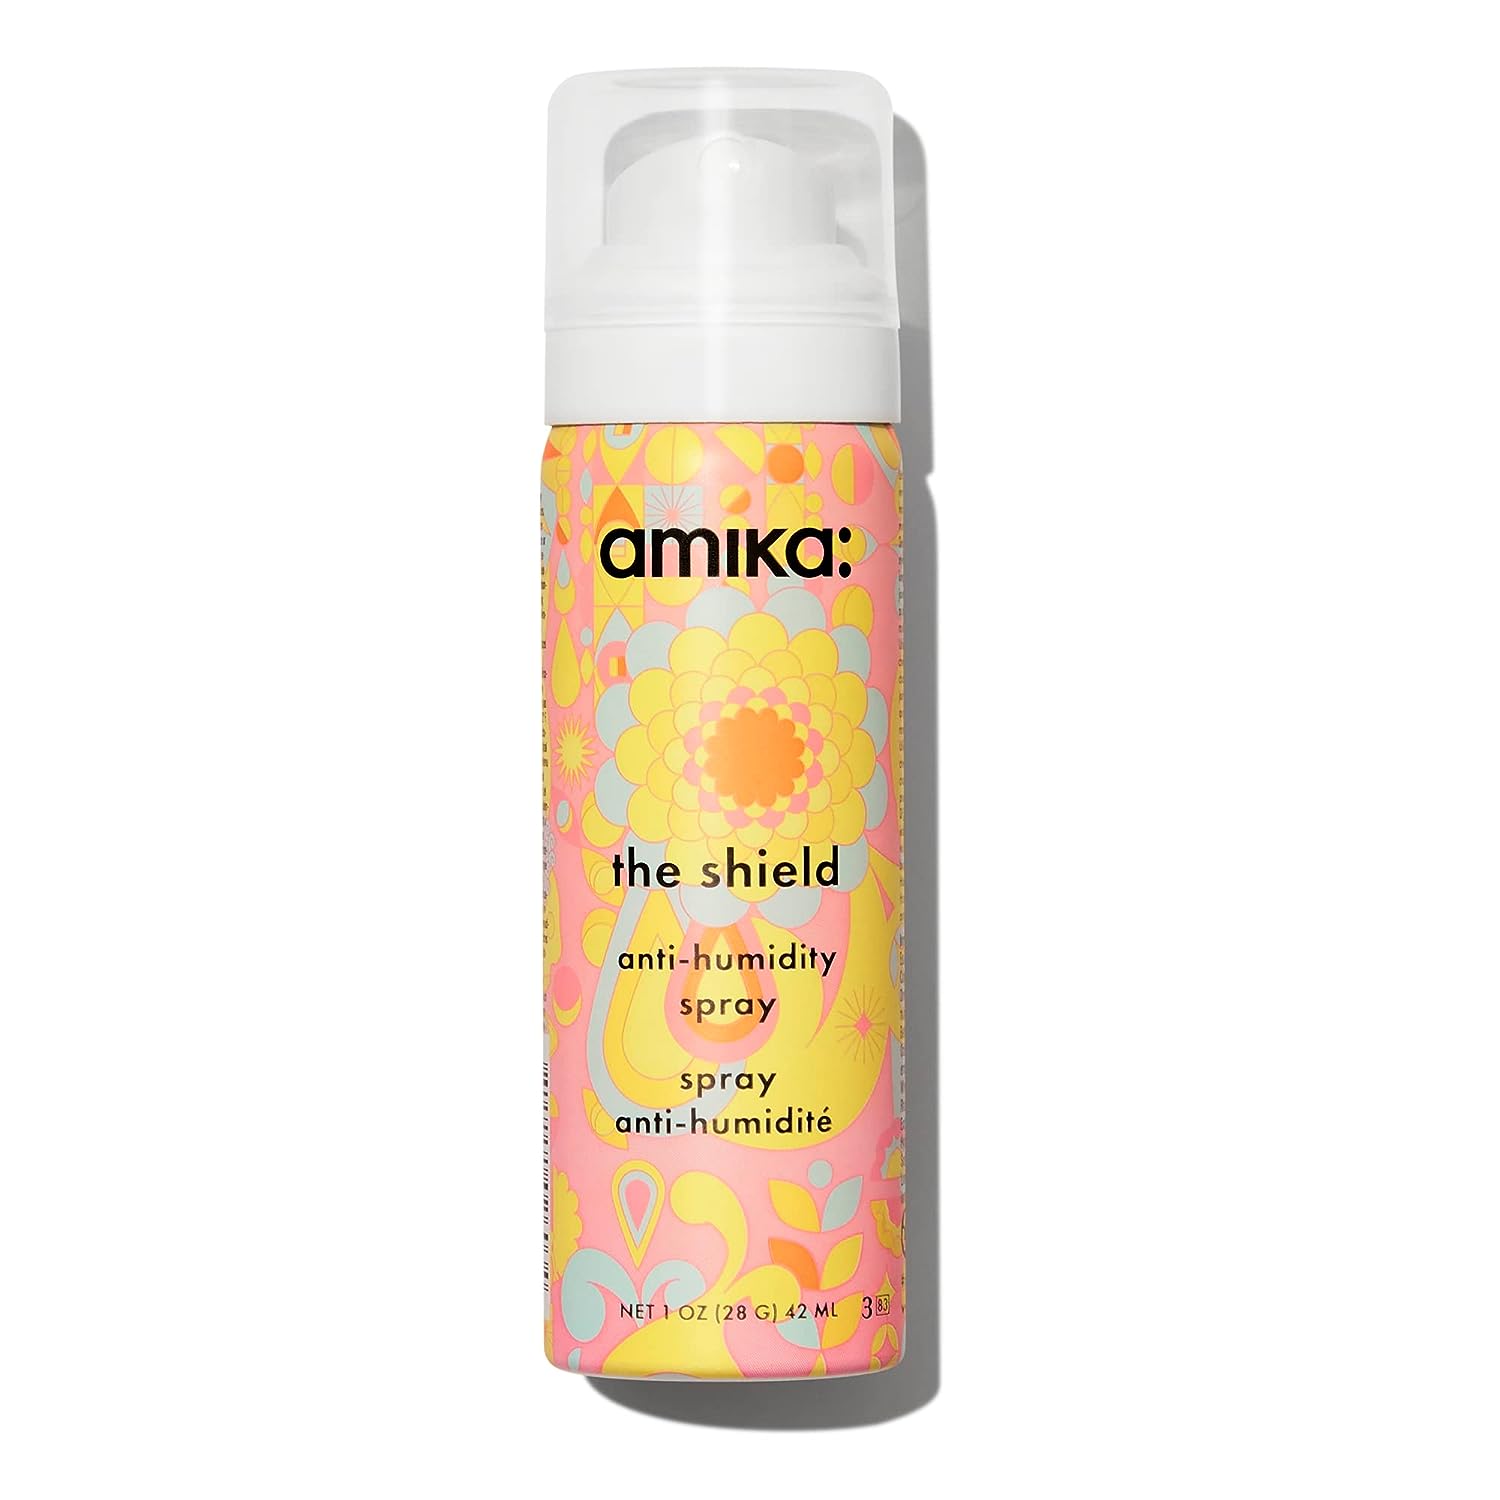 amika the shield anti-humidity spray